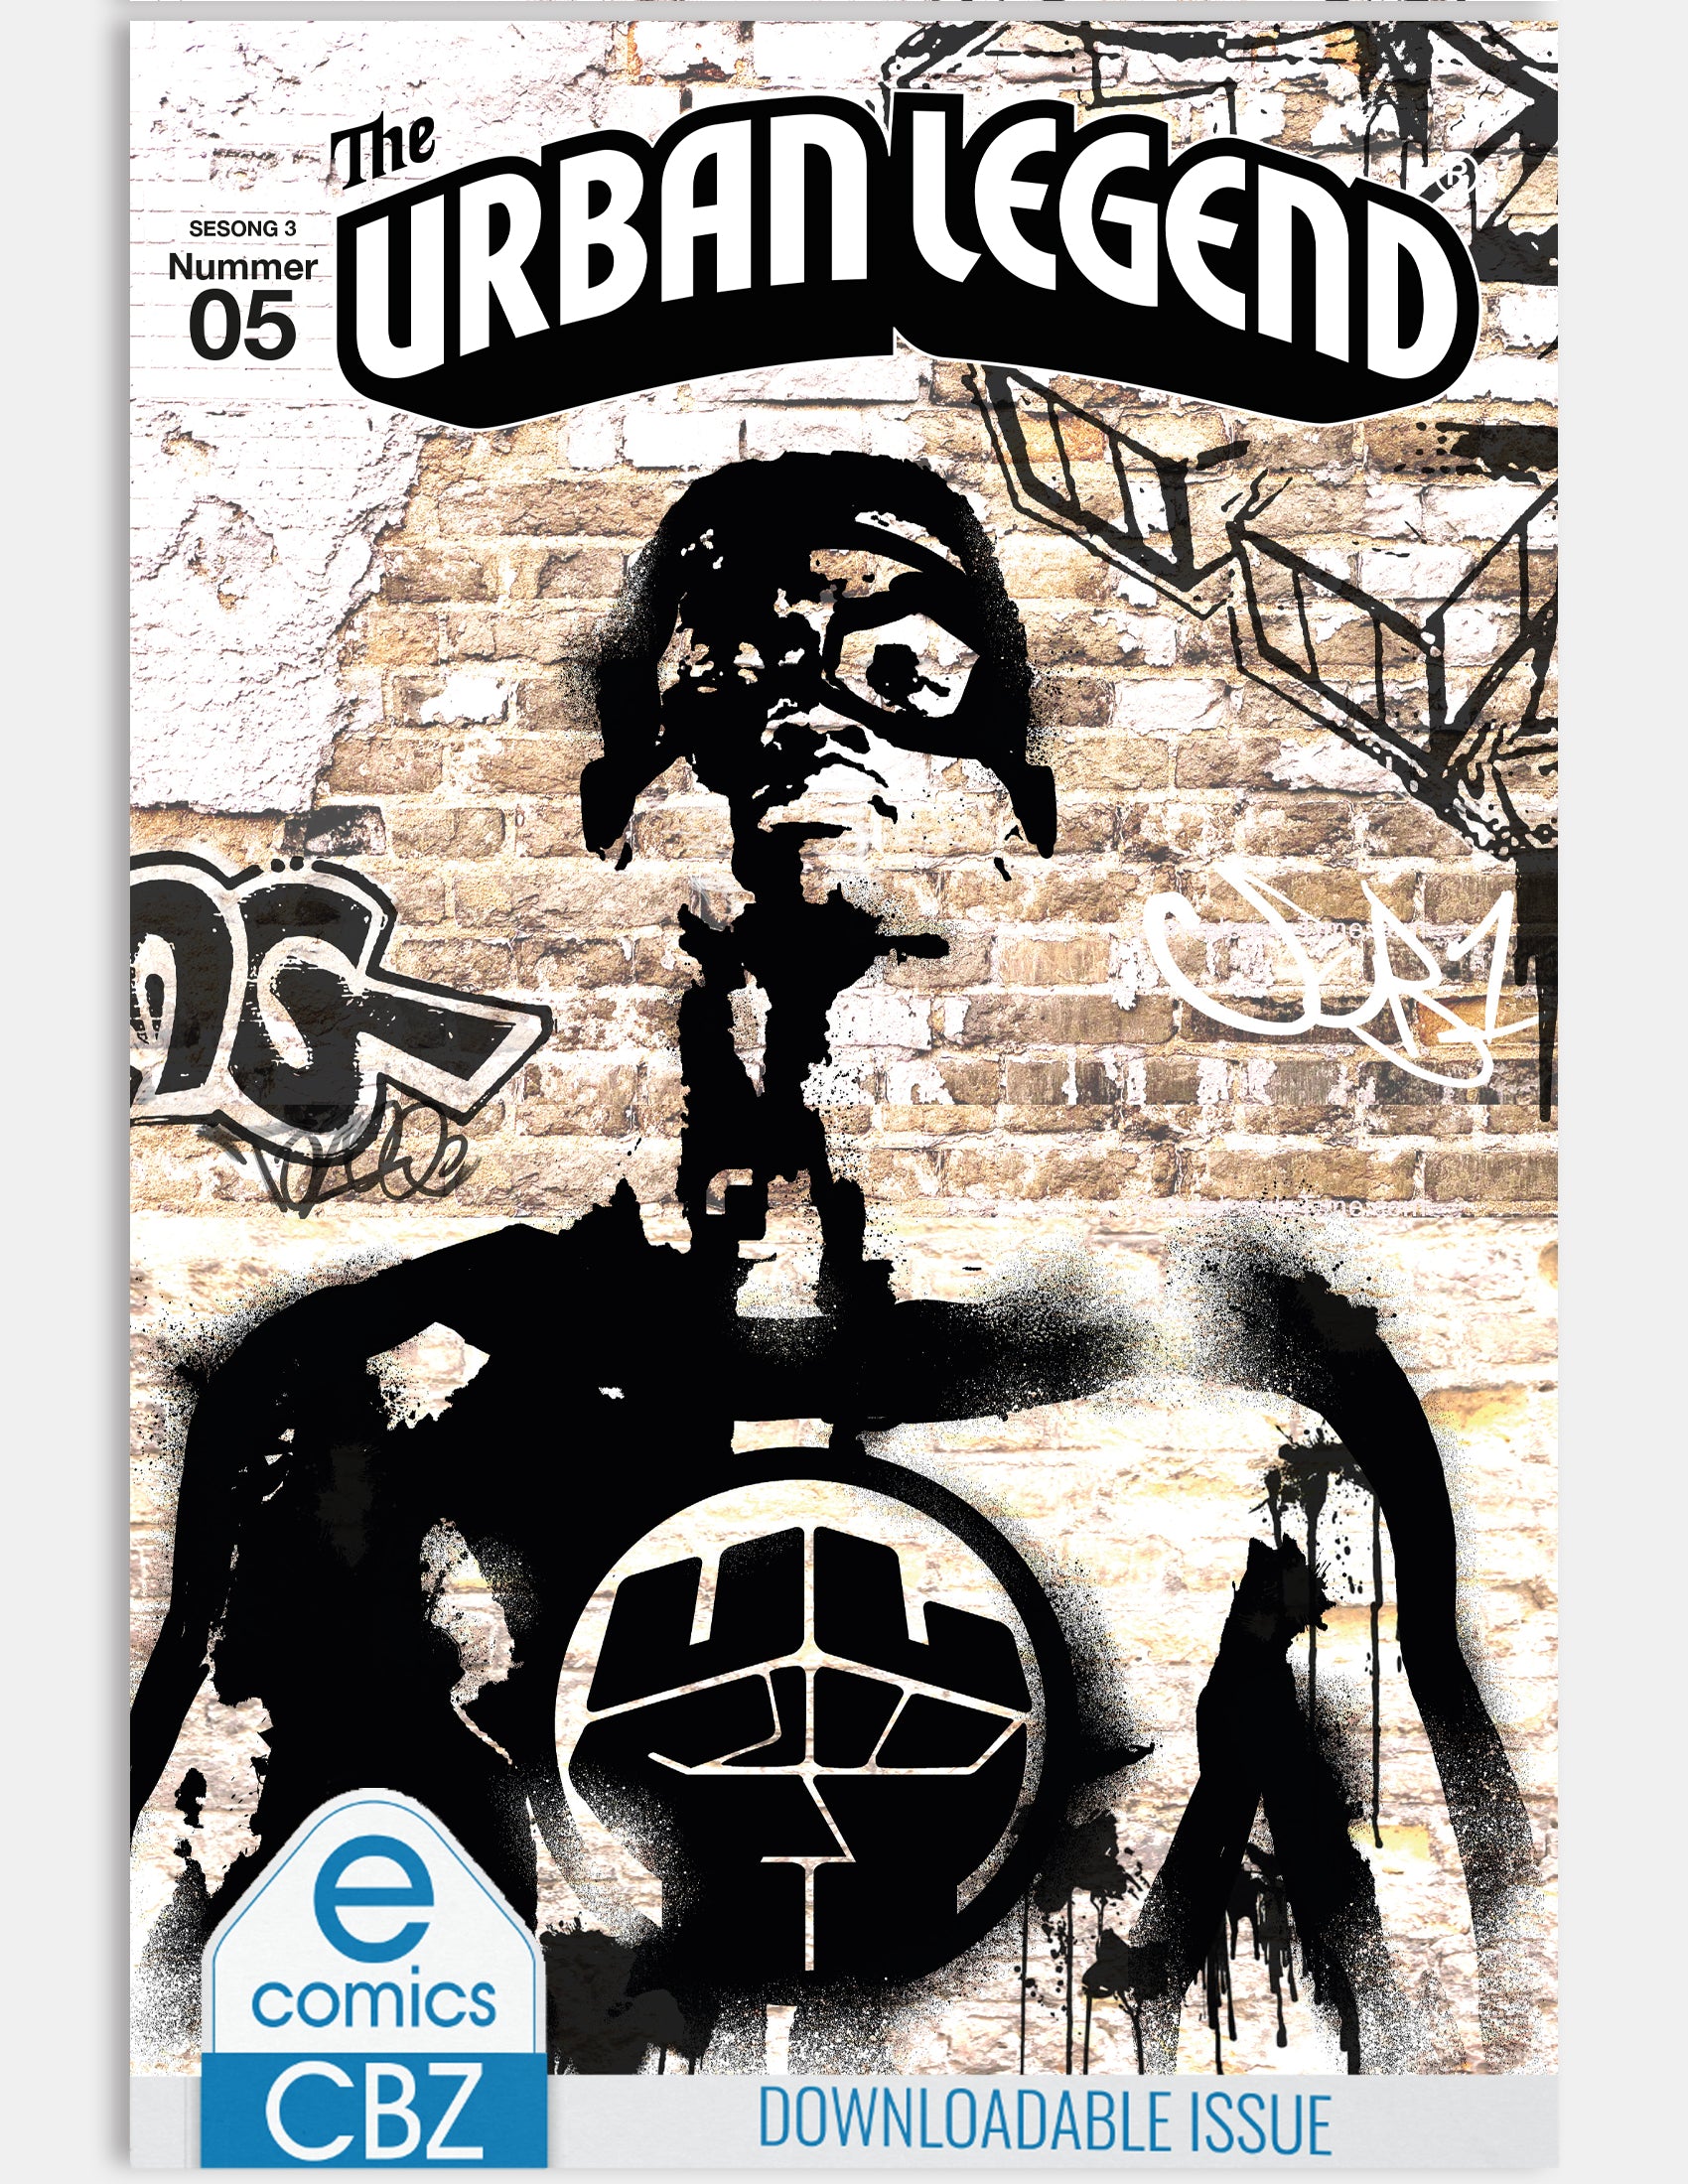 The Urban Legend - Stories (Utgave 5 - Sesong 3) - Digital utgave